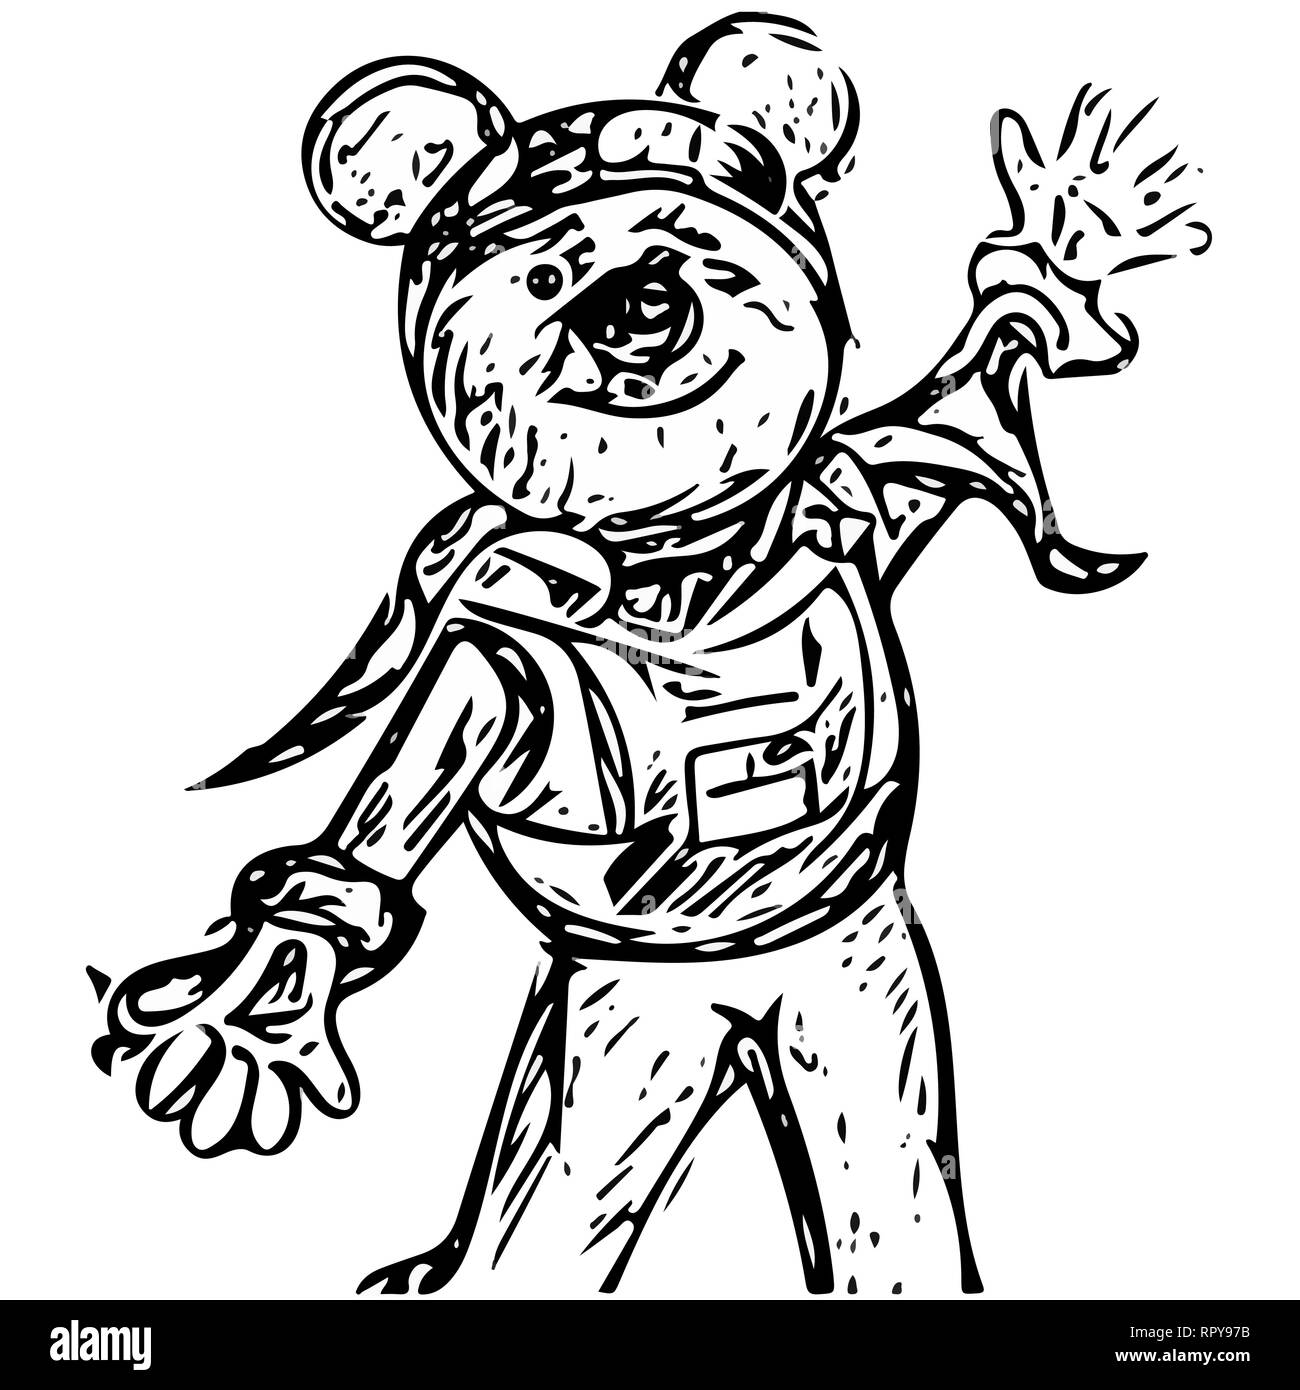 Cartoon alien personaje como un oso con orejas y vestido con un traje espacial. una mano en la parte superior y otro en la parte inferior. Ilustración del Vector